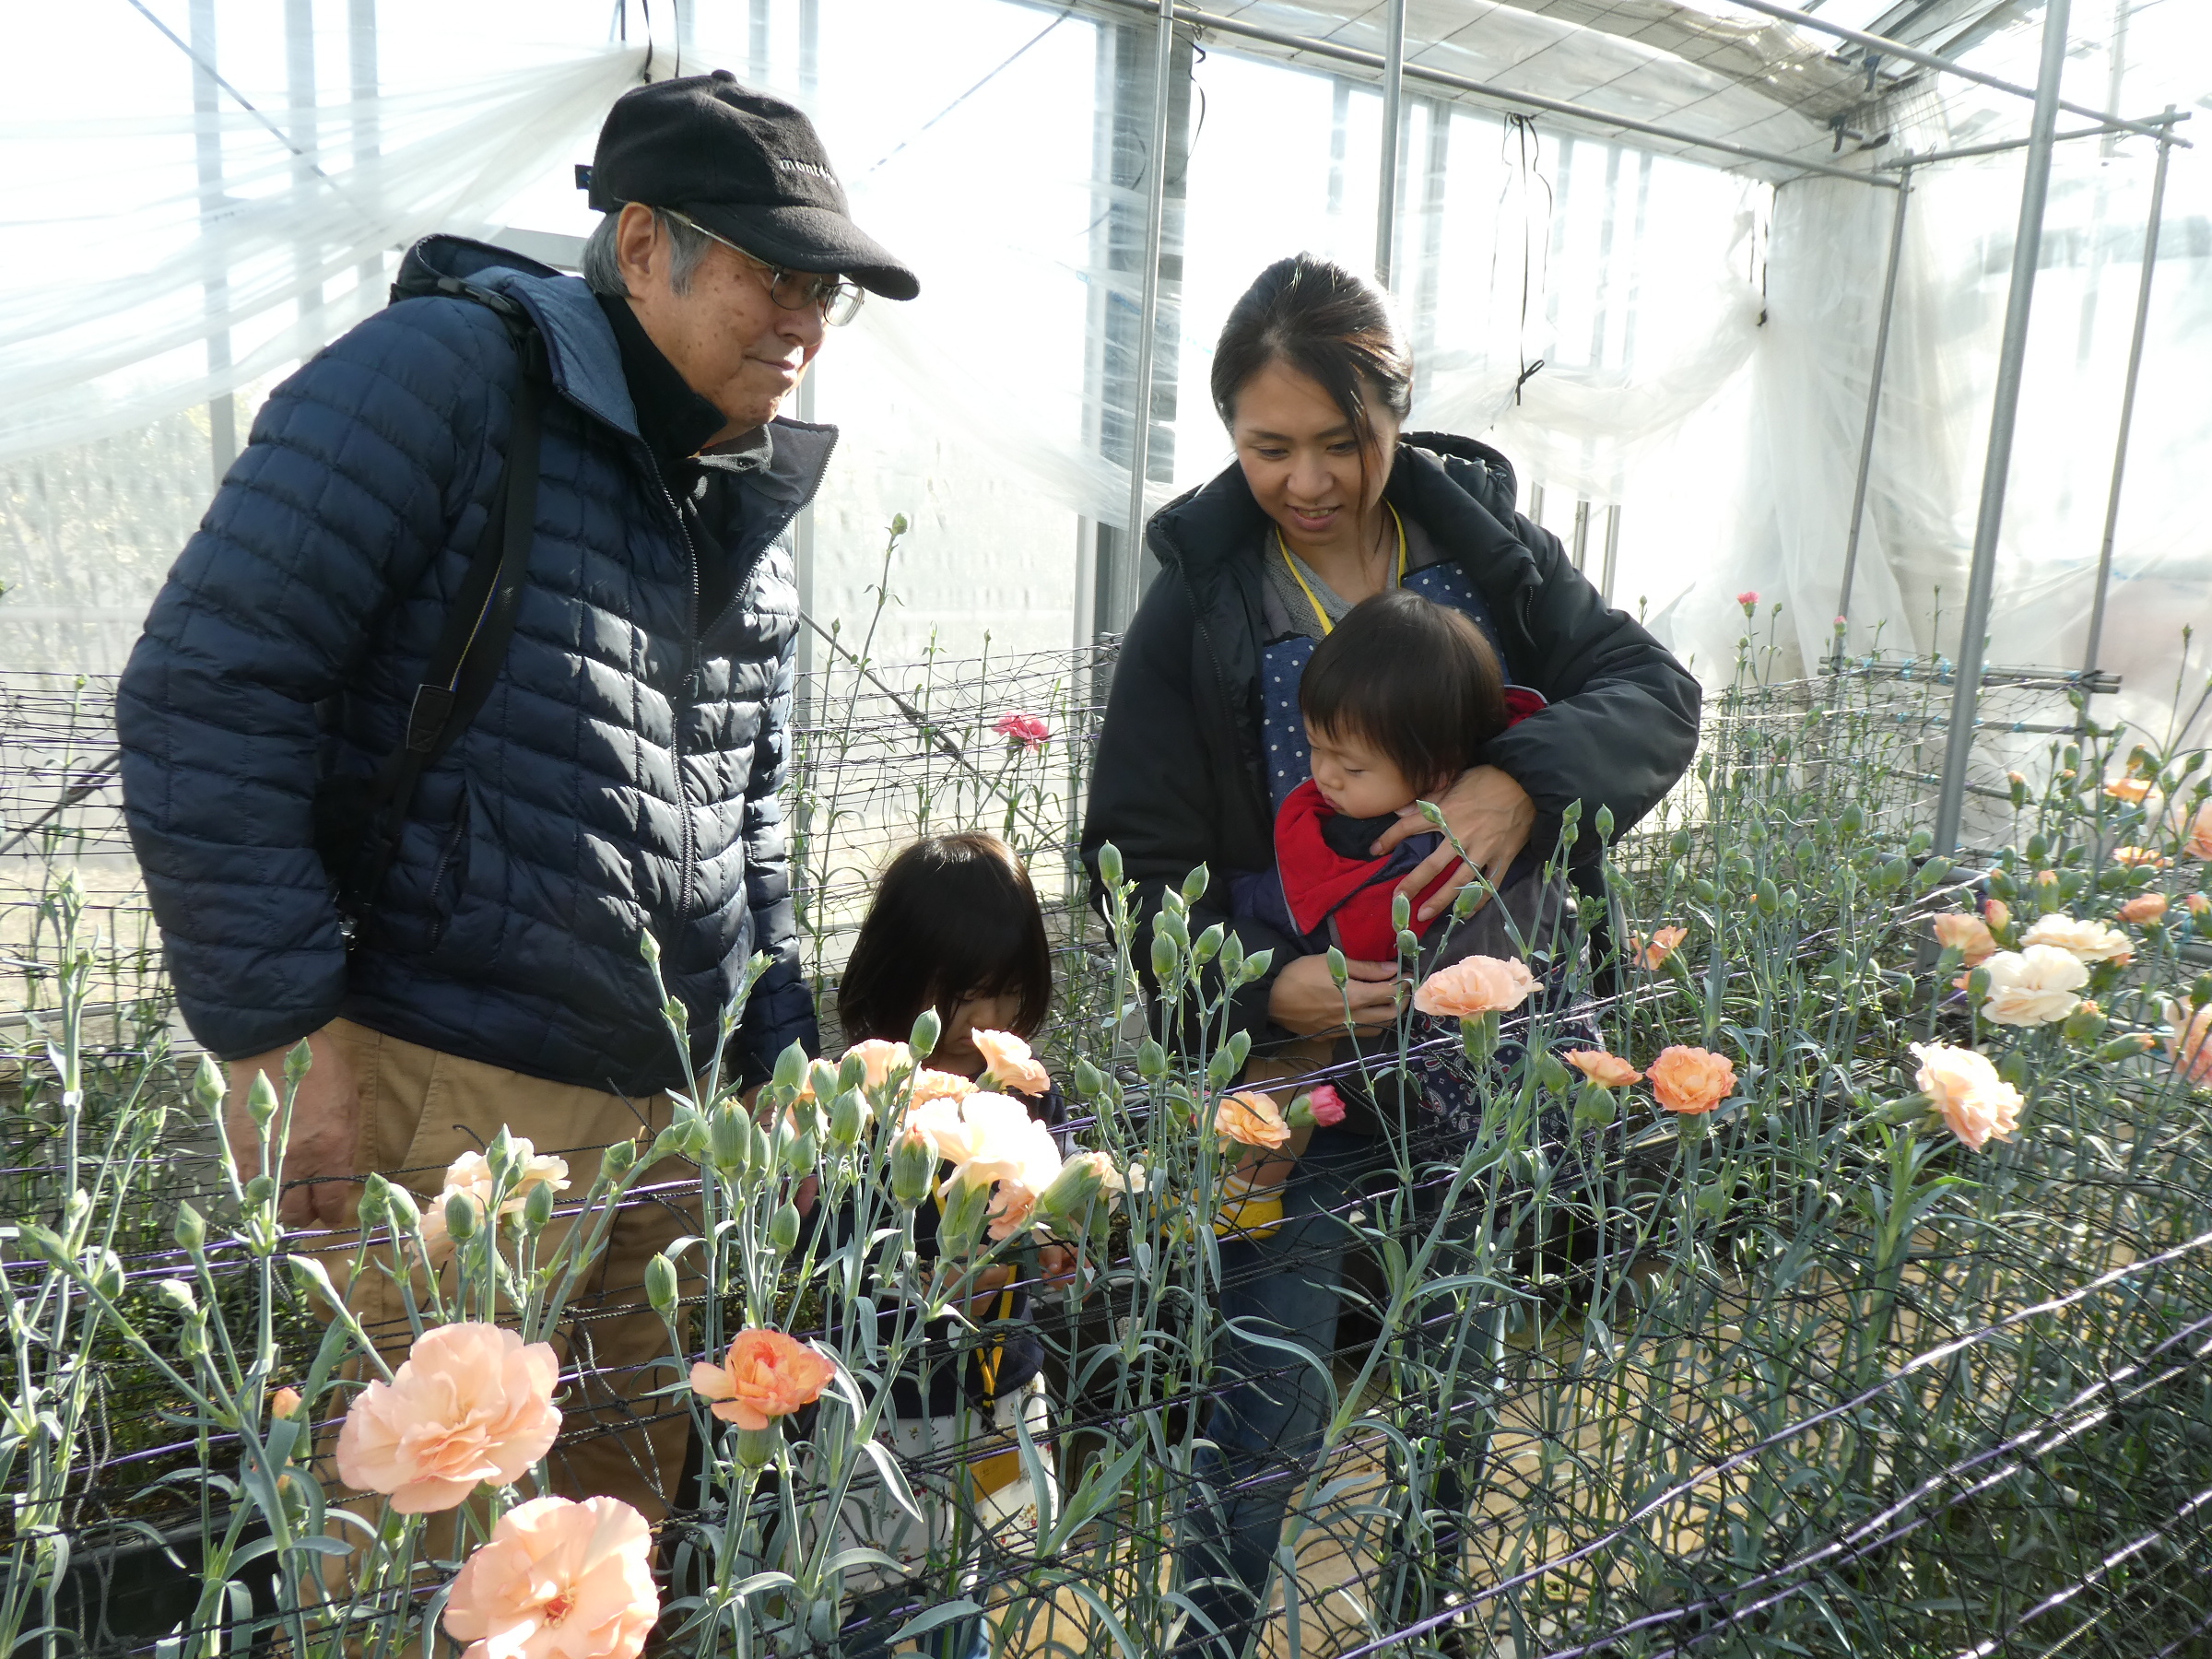 カーネーションの花摘み体験♪ - 神奈川県立花と緑のふれあいセンター